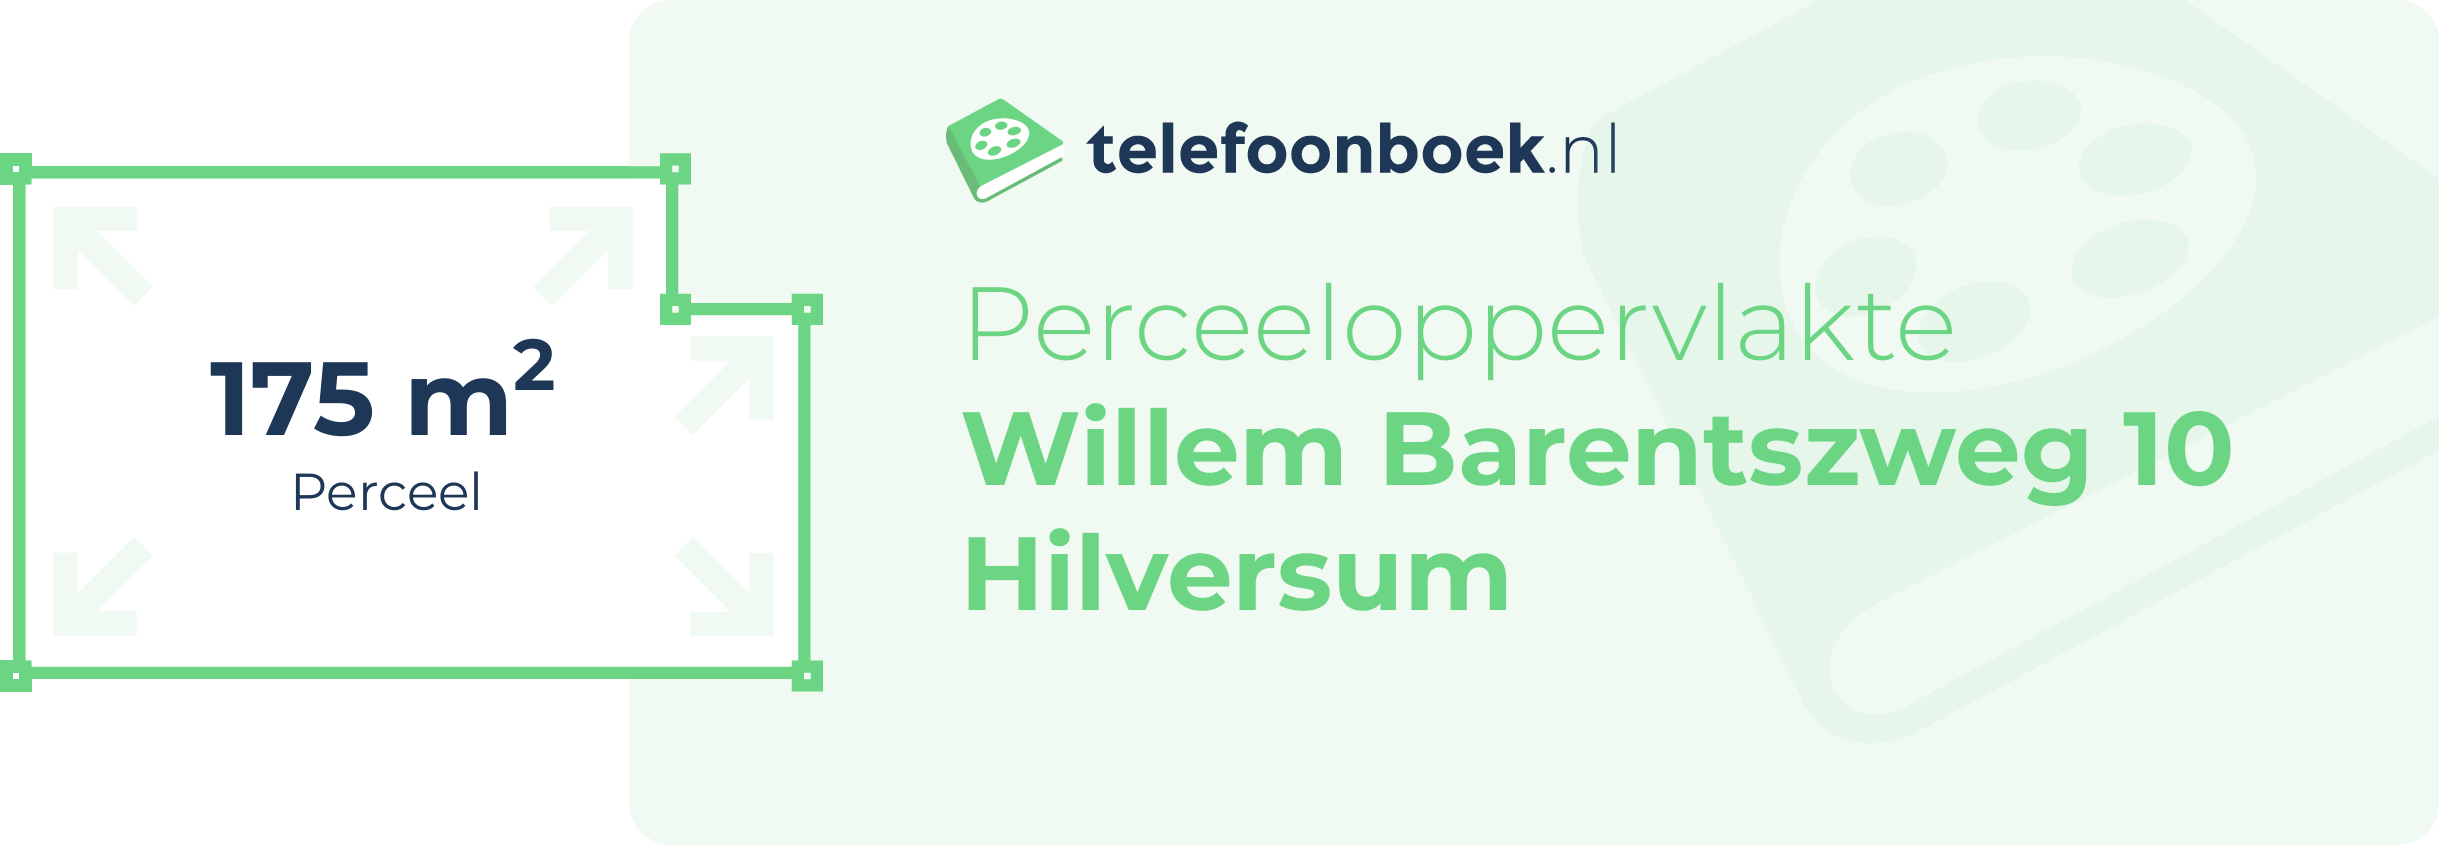 Perceeloppervlakte Willem Barentszweg 10 Hilversum